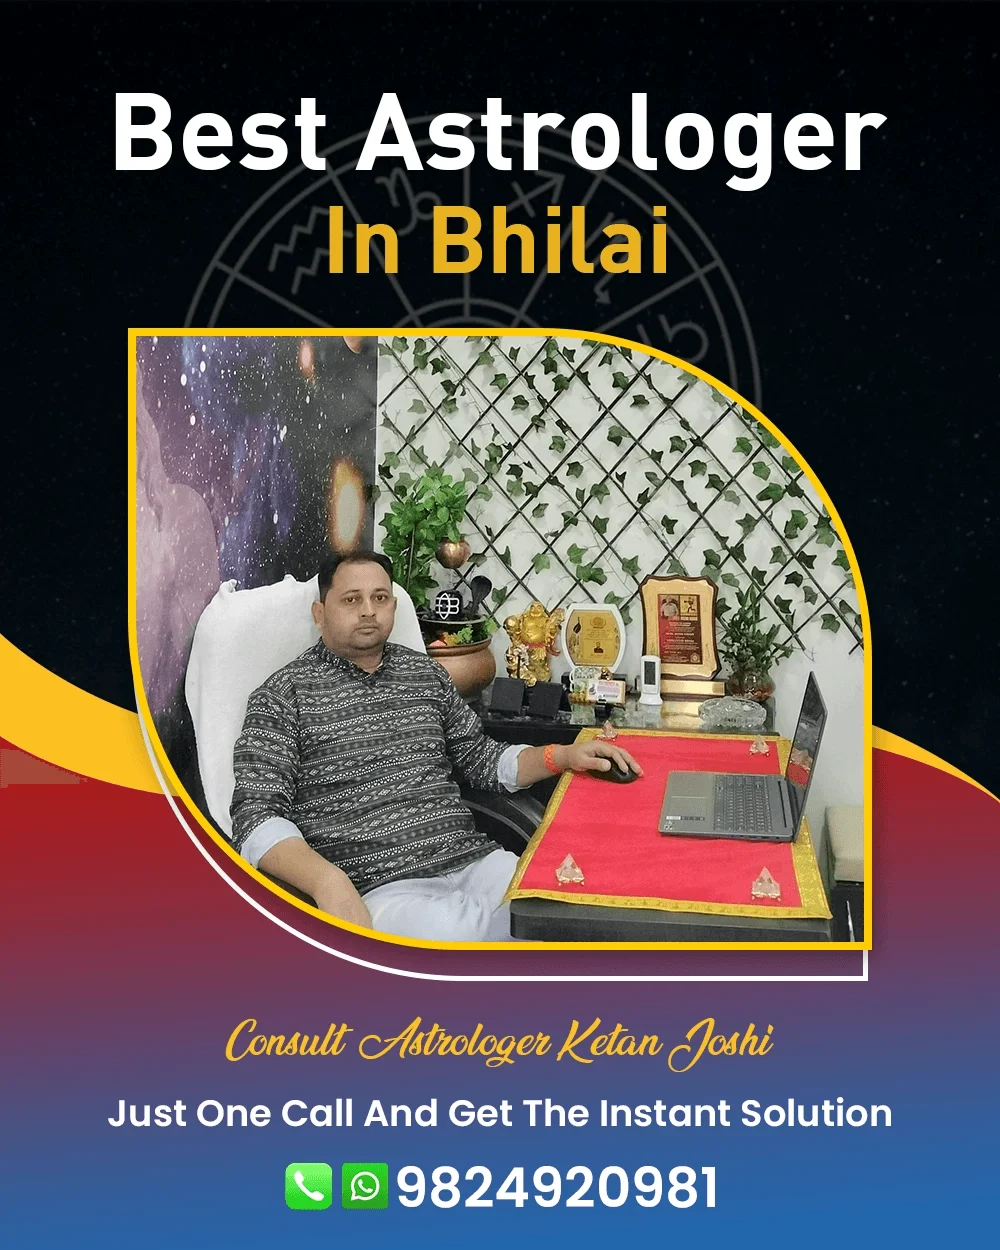 Best Astrologer In Bhilai